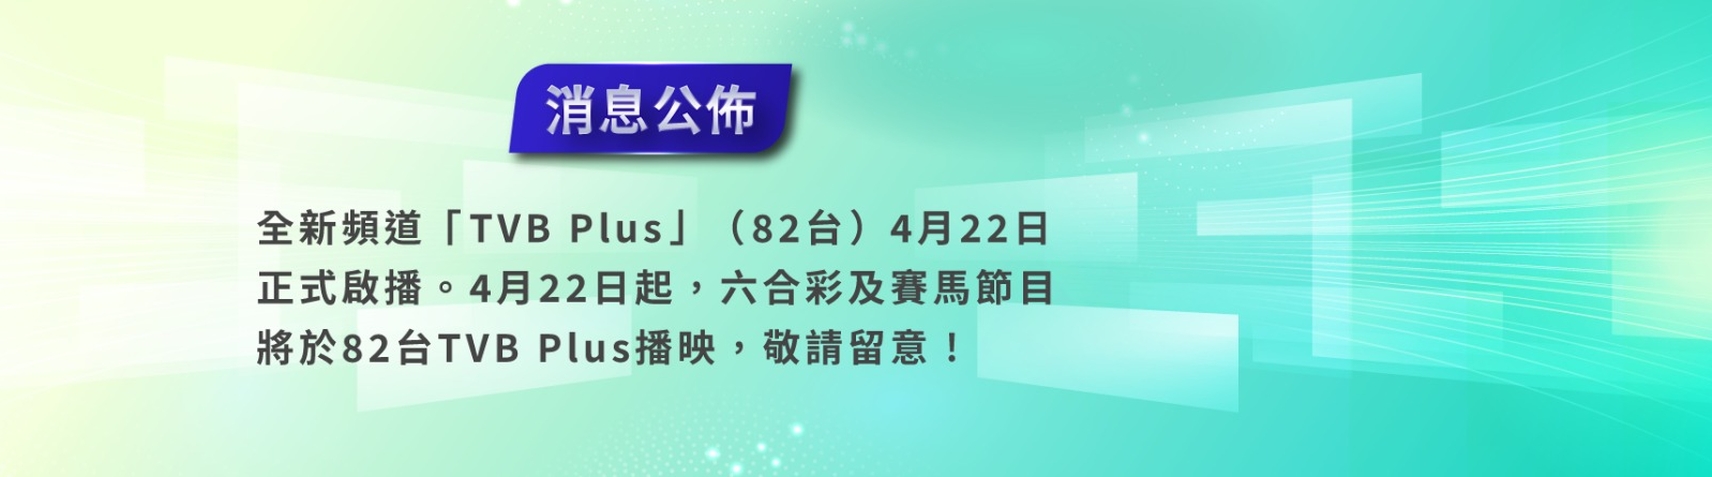 82台TVB Plus啟播